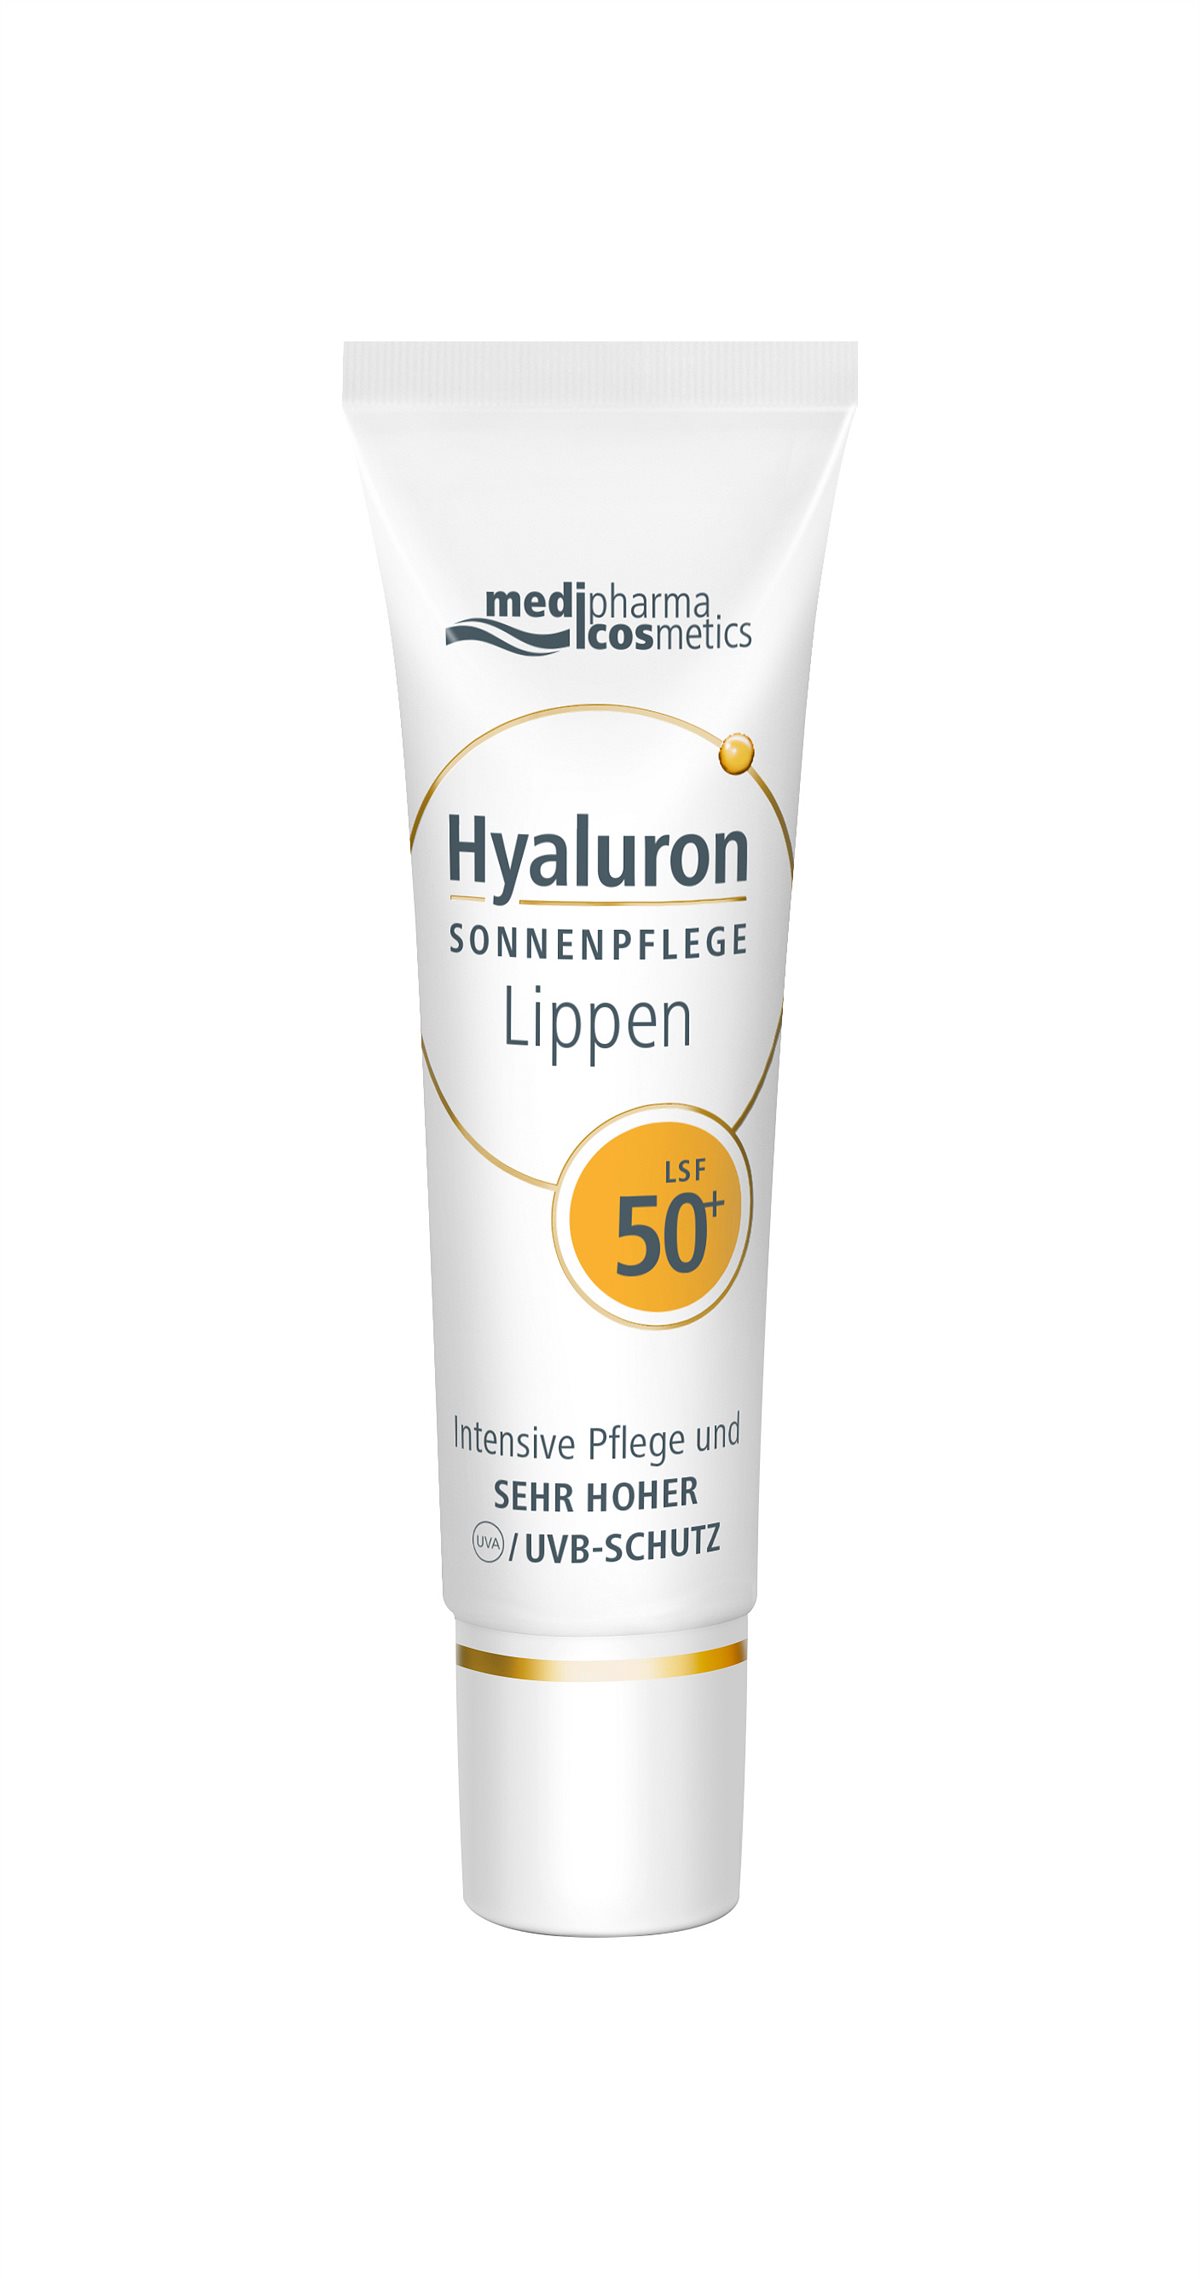 medipharma cosmetics Hyaluron SONNENPFLEGE Lippen 50